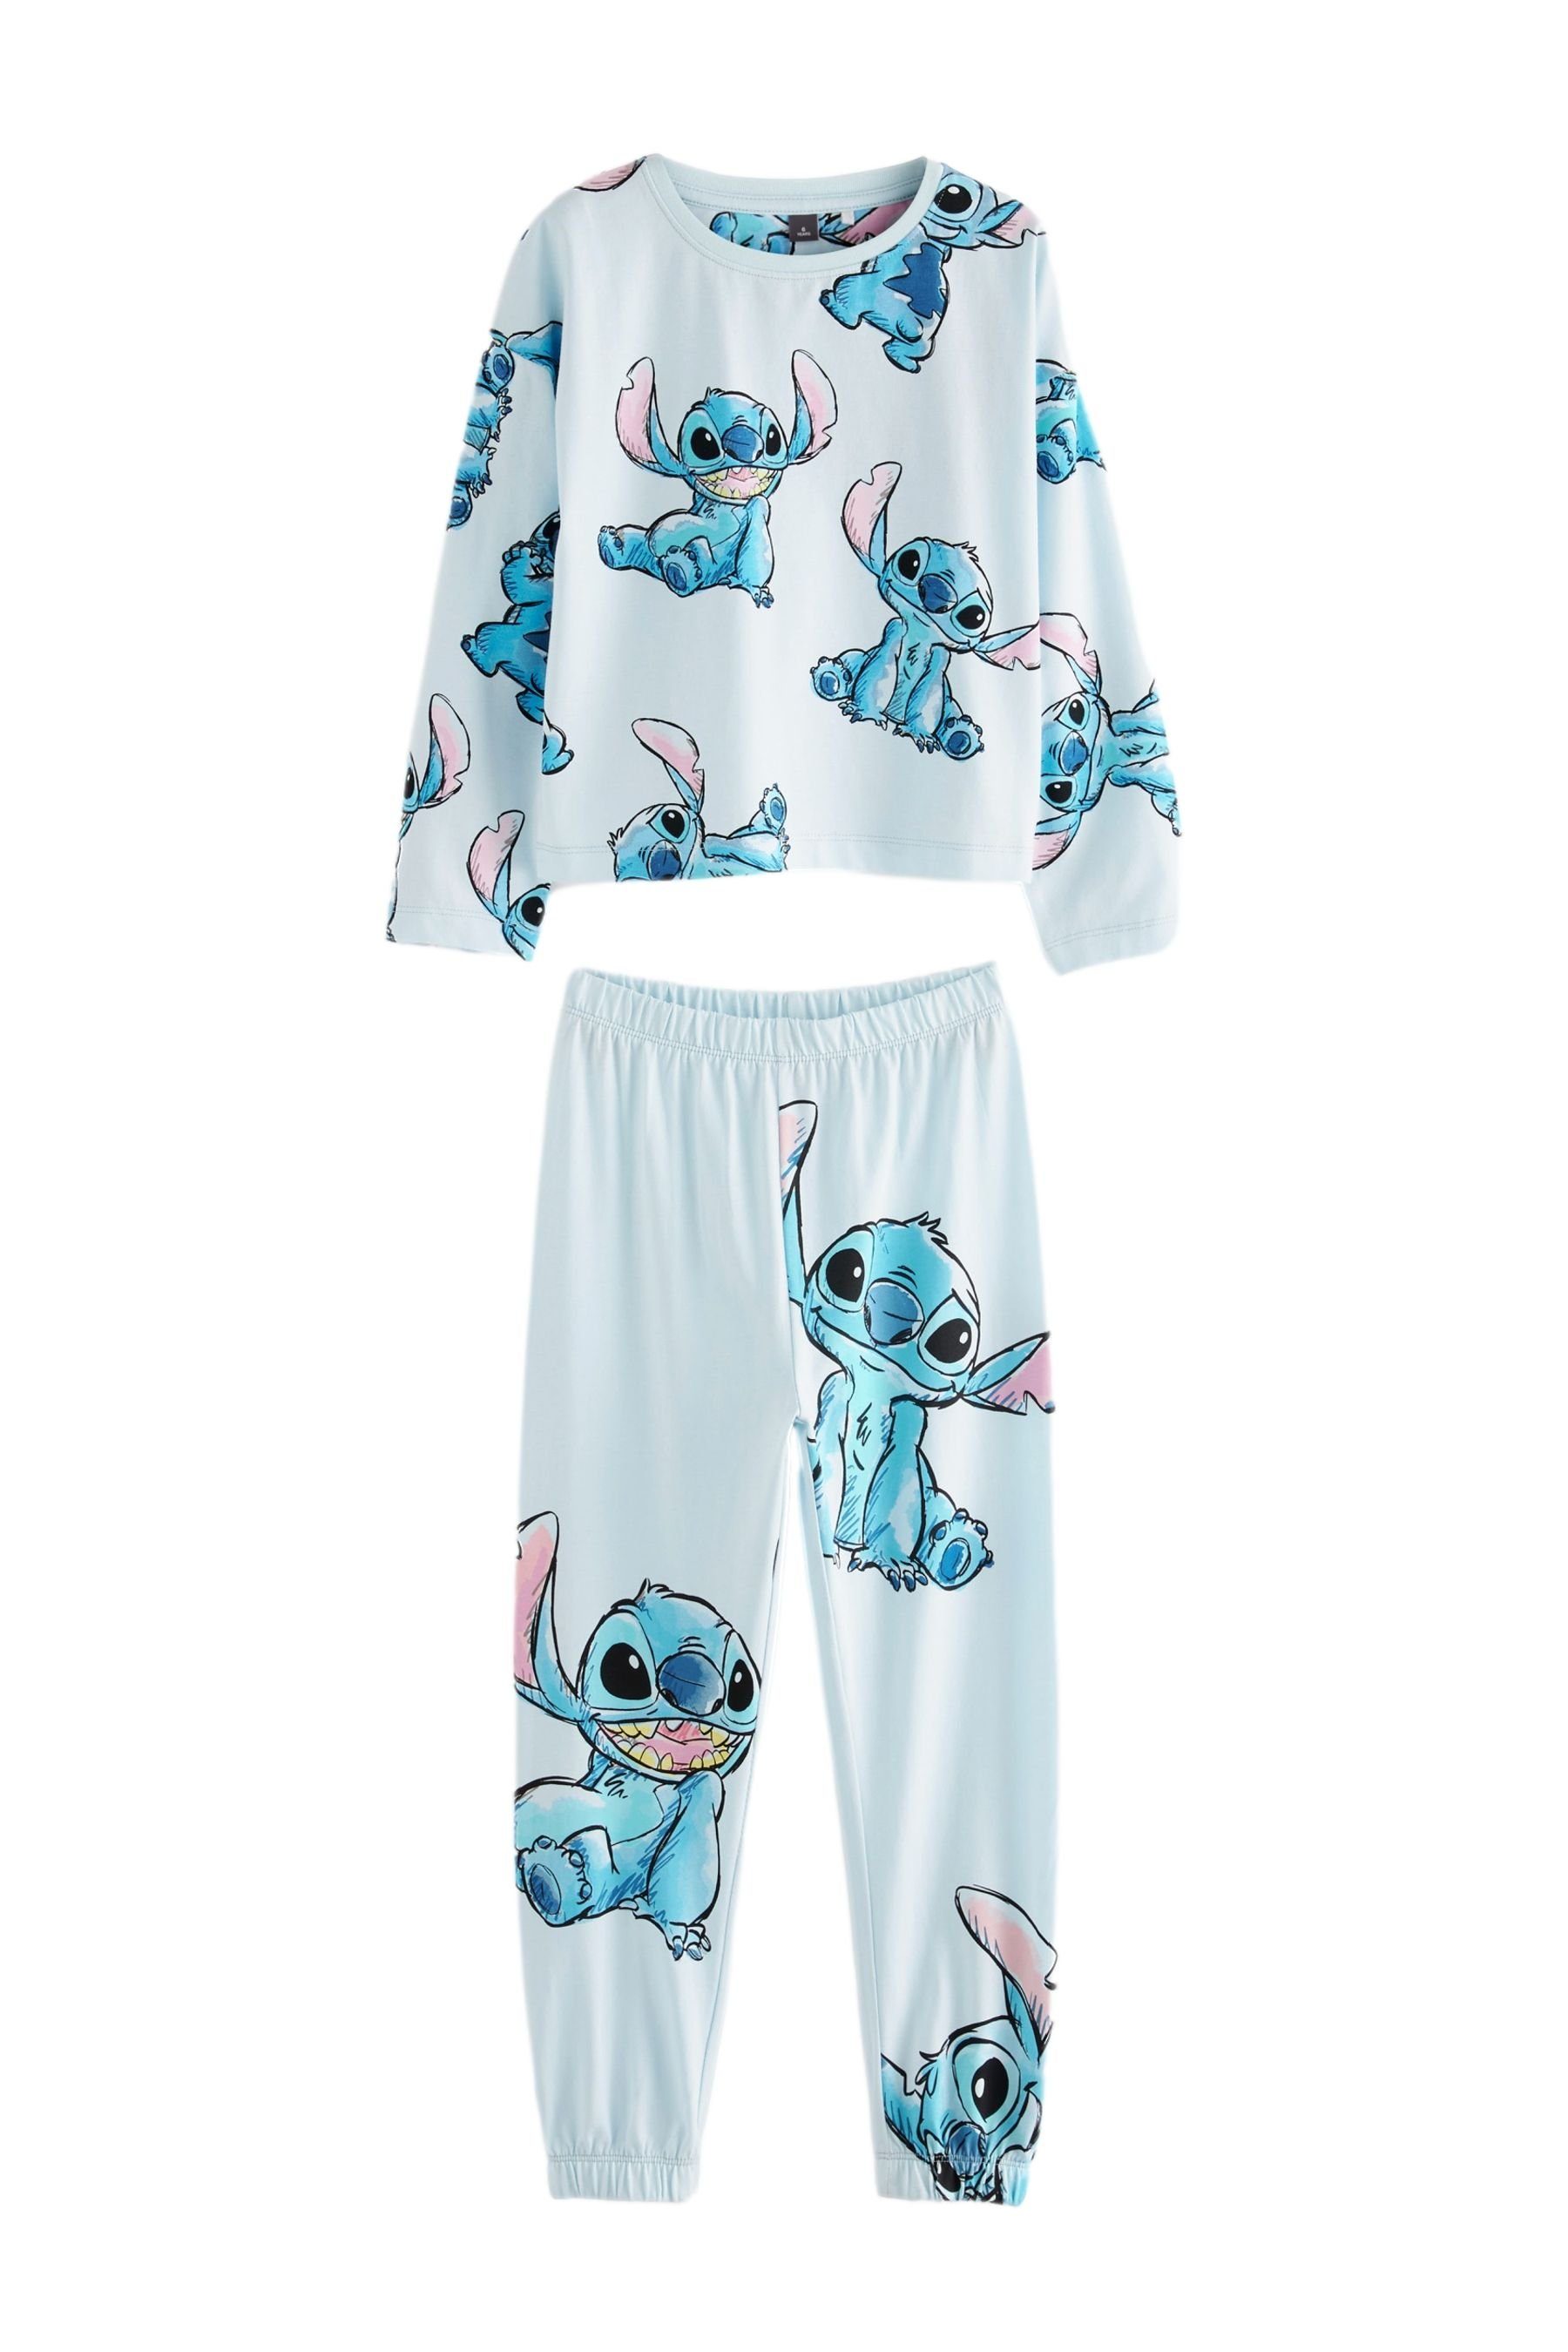 Next Pyjama Lizenzierter Schlafanzug (2 Disney Stitch tlg)